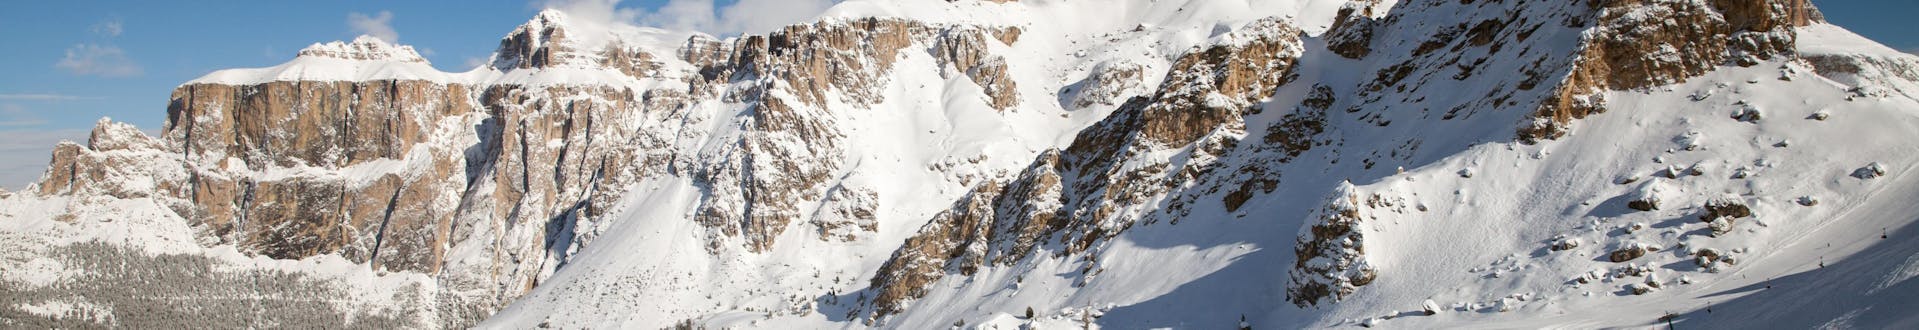 Área de esquí en Canazei, Italia, donde se pueden reservar clases de esquí.